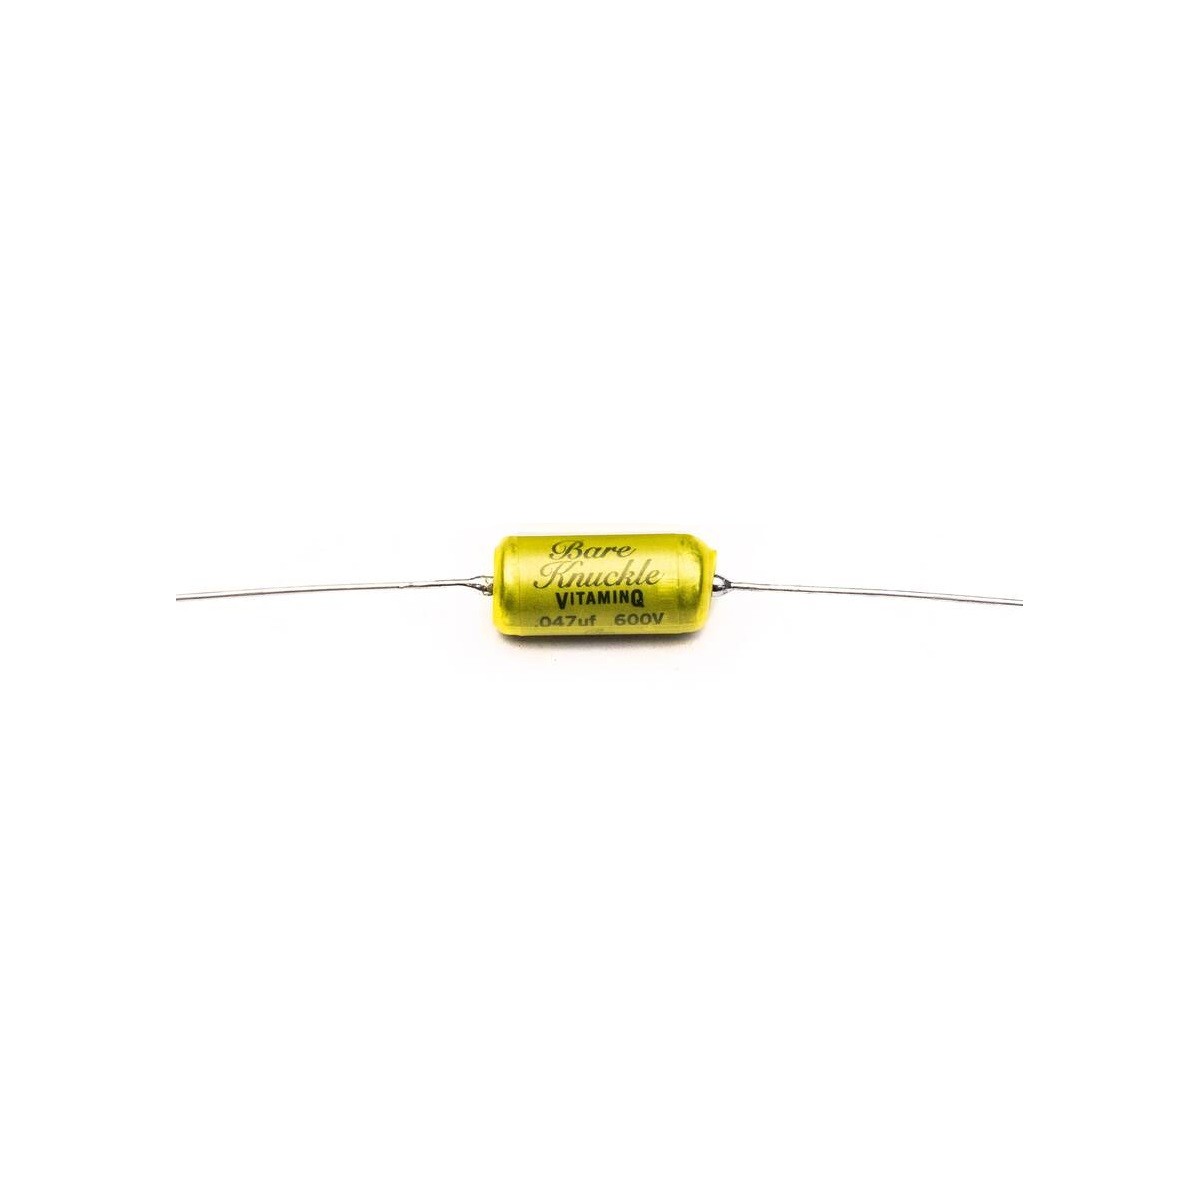 BARE KNUCKLE / JUPITER capacitor: 0.047 mfd